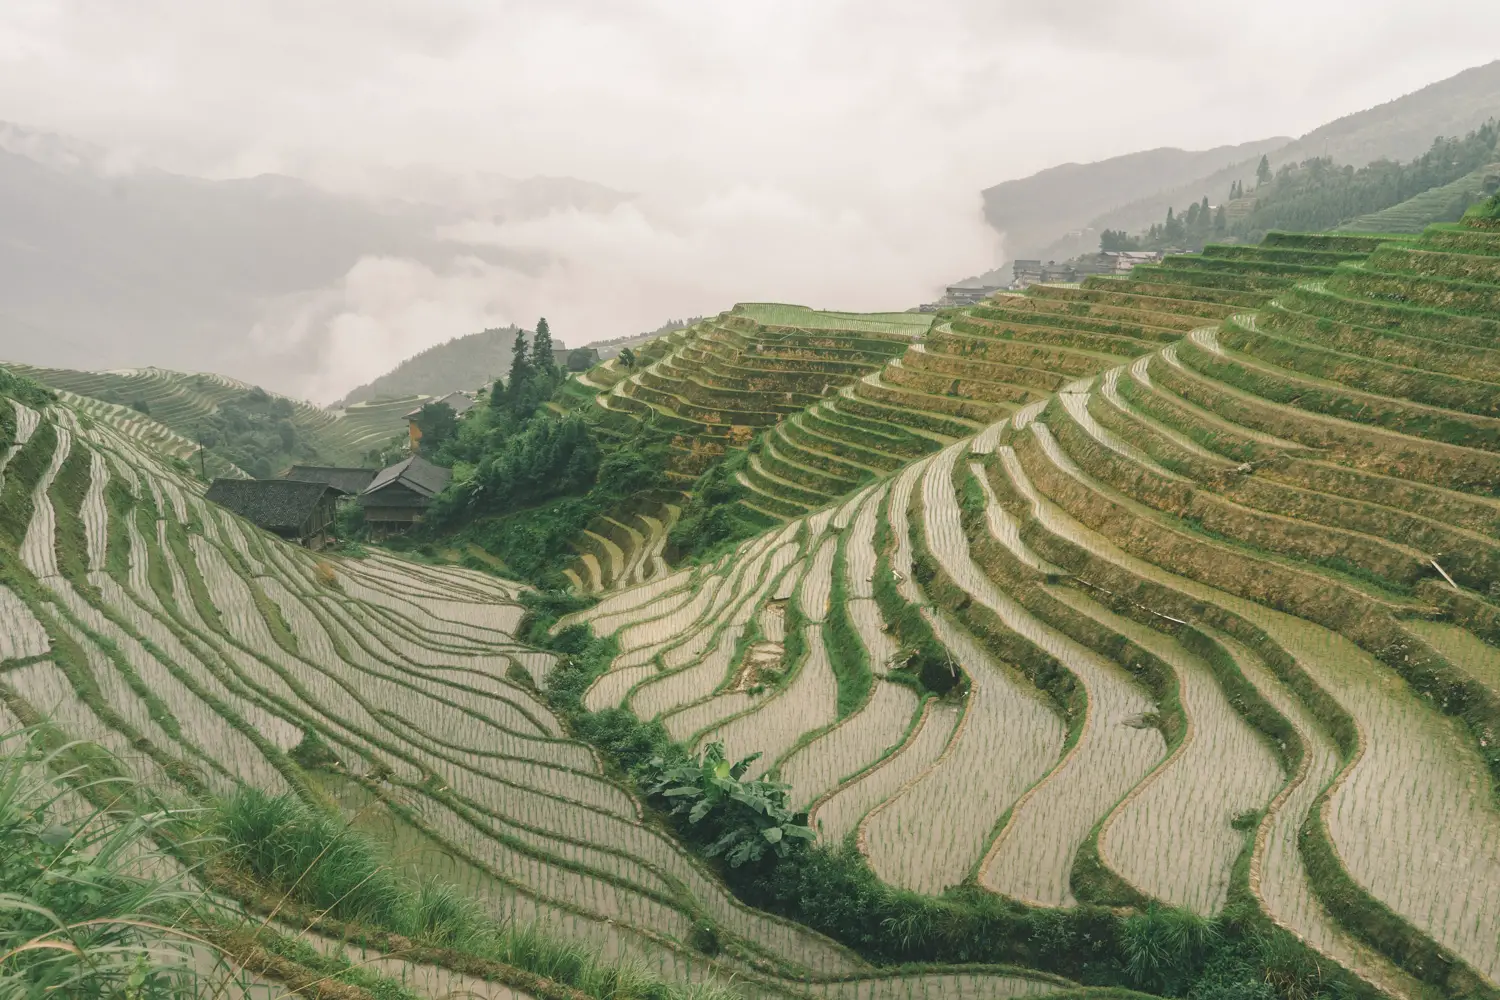 Longji Rice Terraces in Guangxi, China